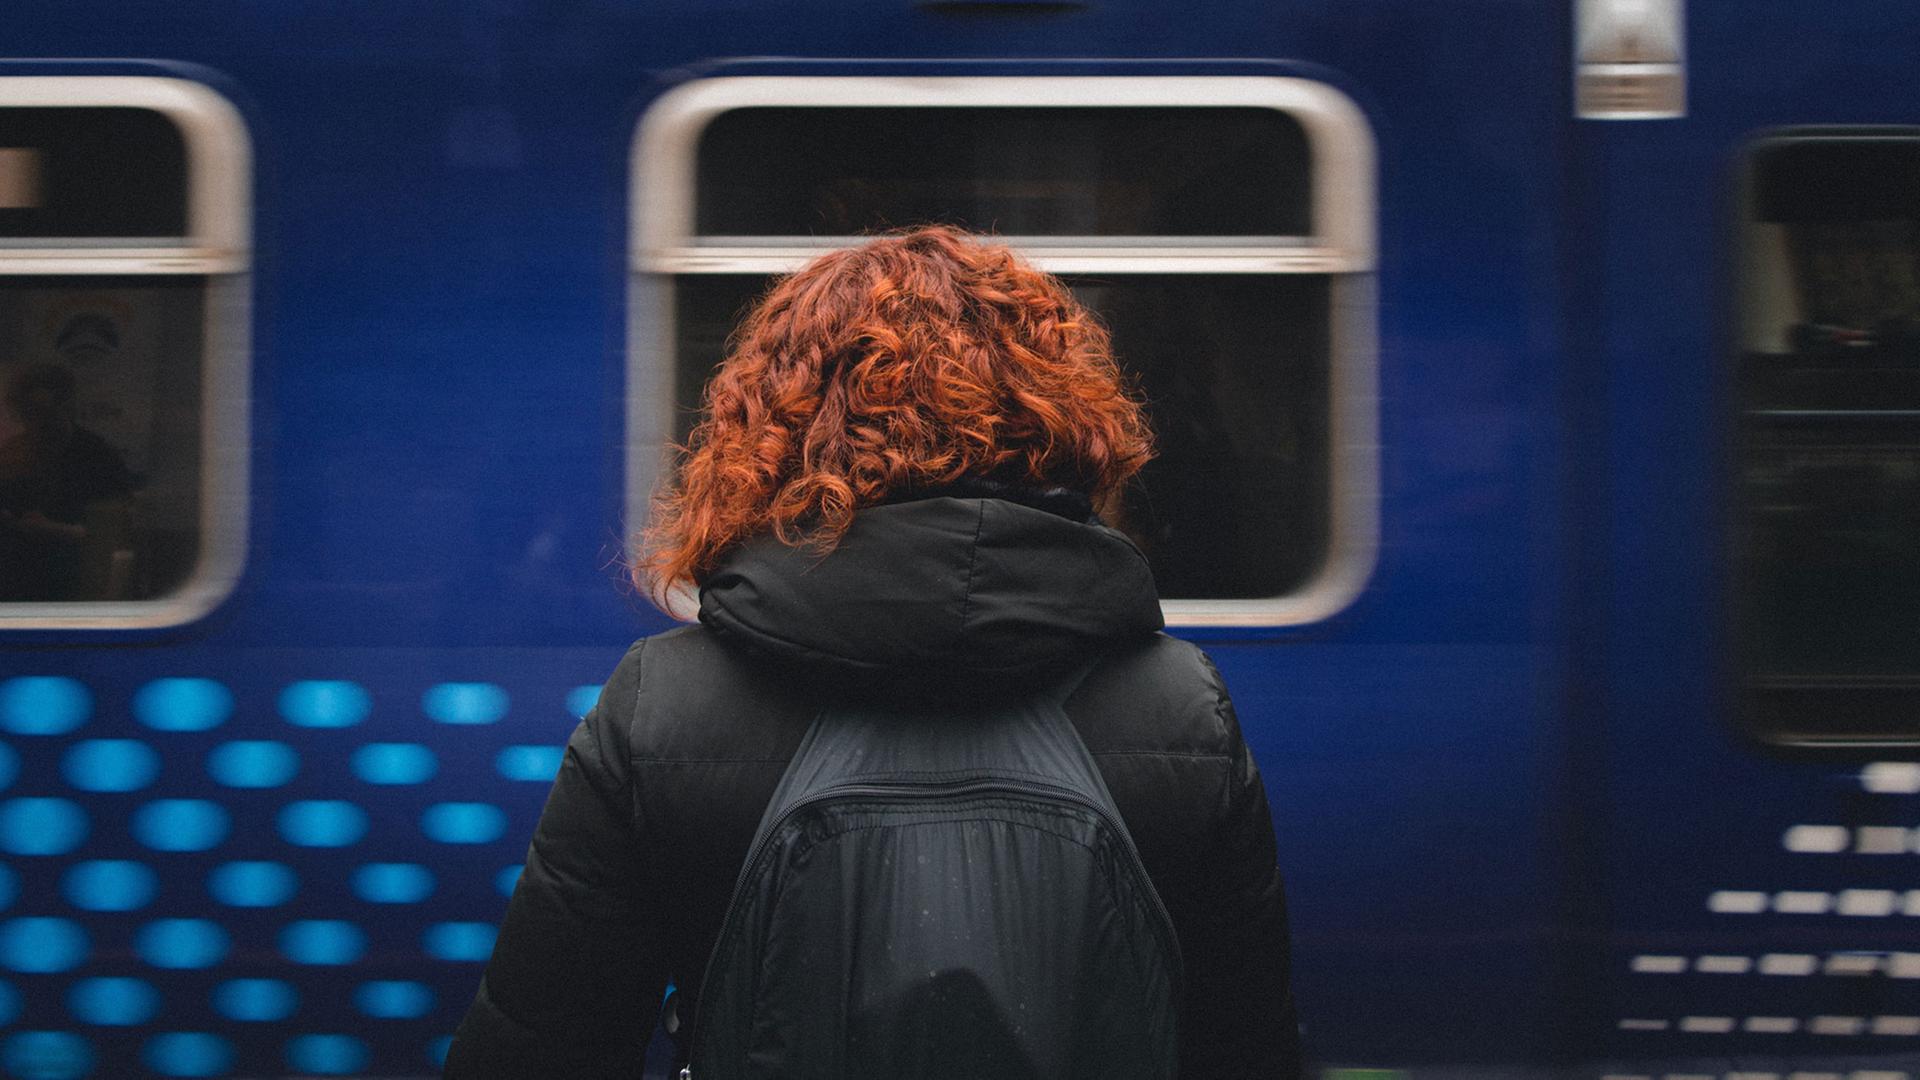 Eine rothaarige Frau steht mit dem Rücken zum Fotografen auf einem Bahnsteig, dahinter ein blauer Zug